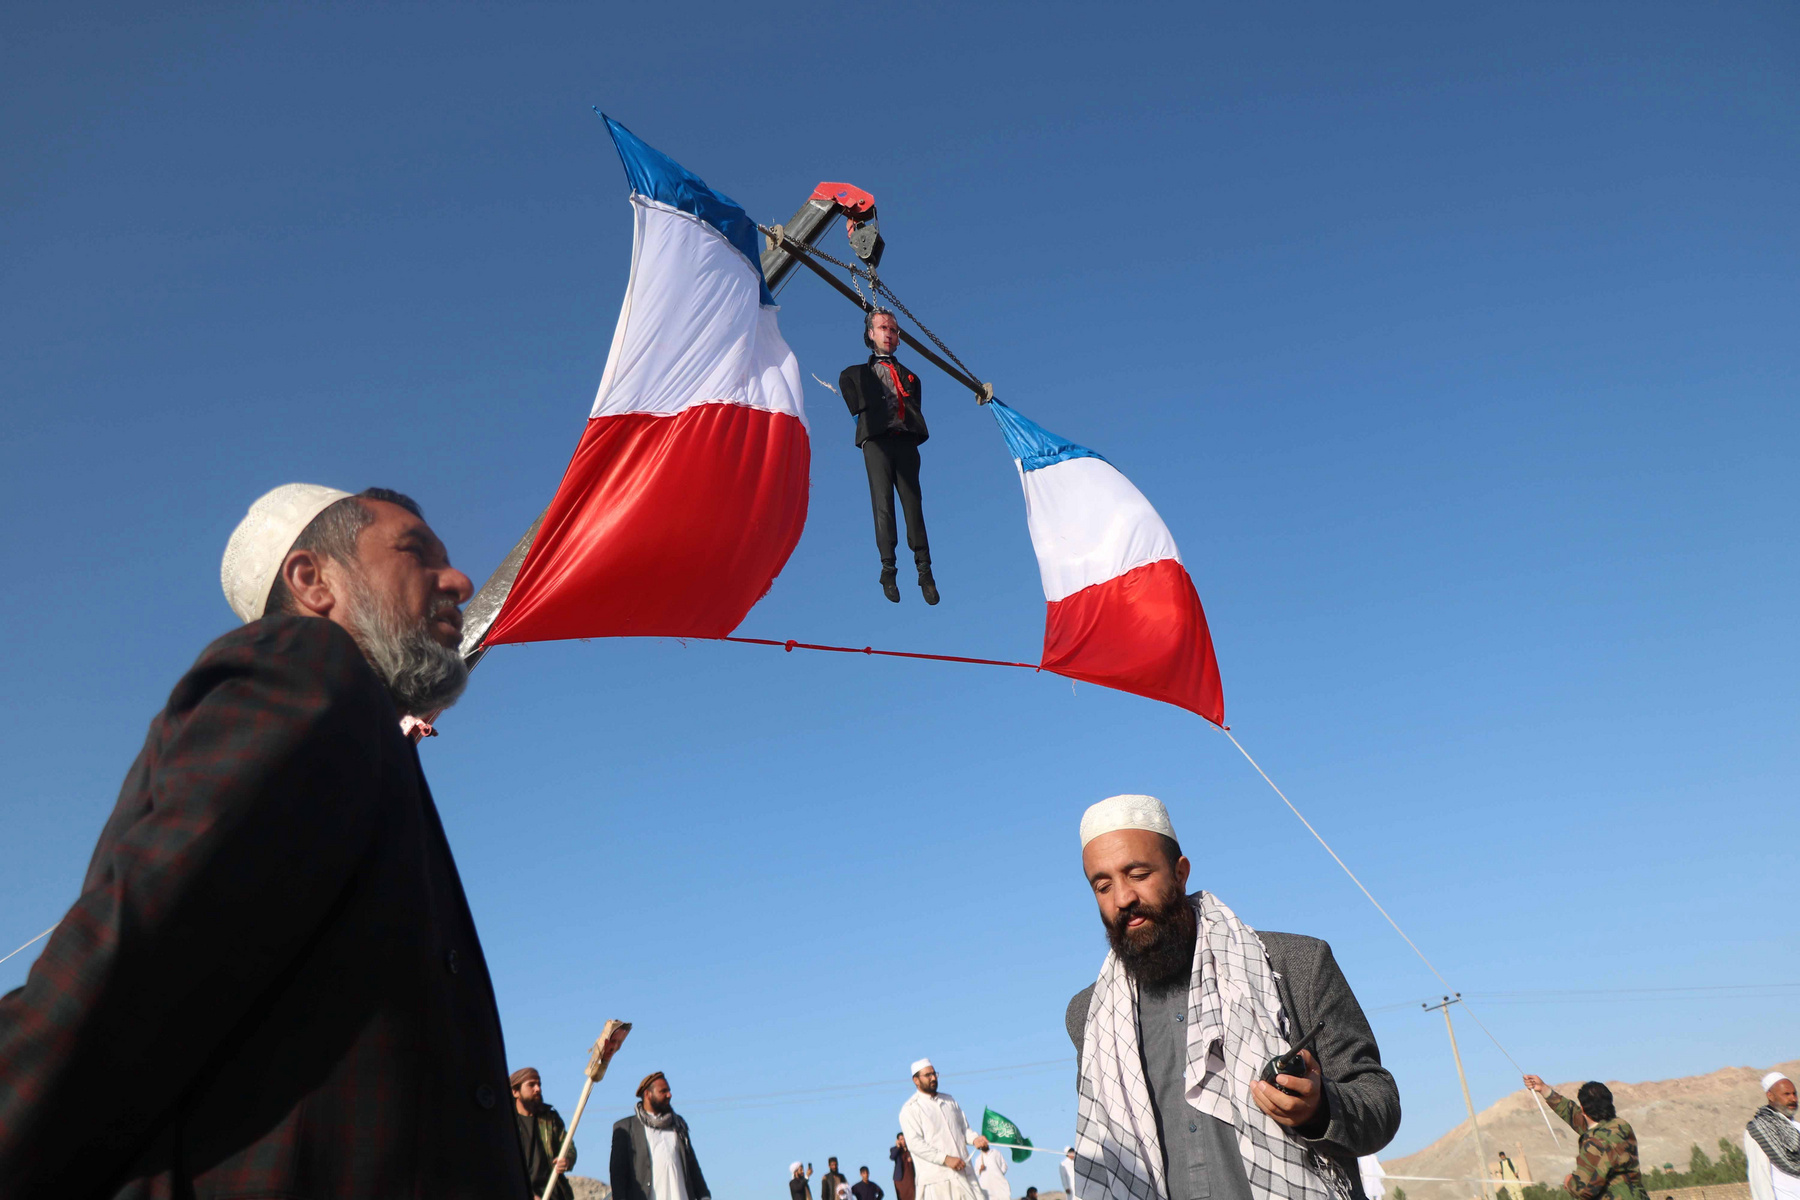 Tüntetõk Emmanuel Macron gúnyfiguráját lógatják egy daruról a francia elnök Mohamed prófétát ábrázoló karikatúrákkal és az iszlámmal kapcsolatos kijelentései miatt tartott tiltakozáson a nyugat-afganisztáni Herátban 2020. október 30-án. 